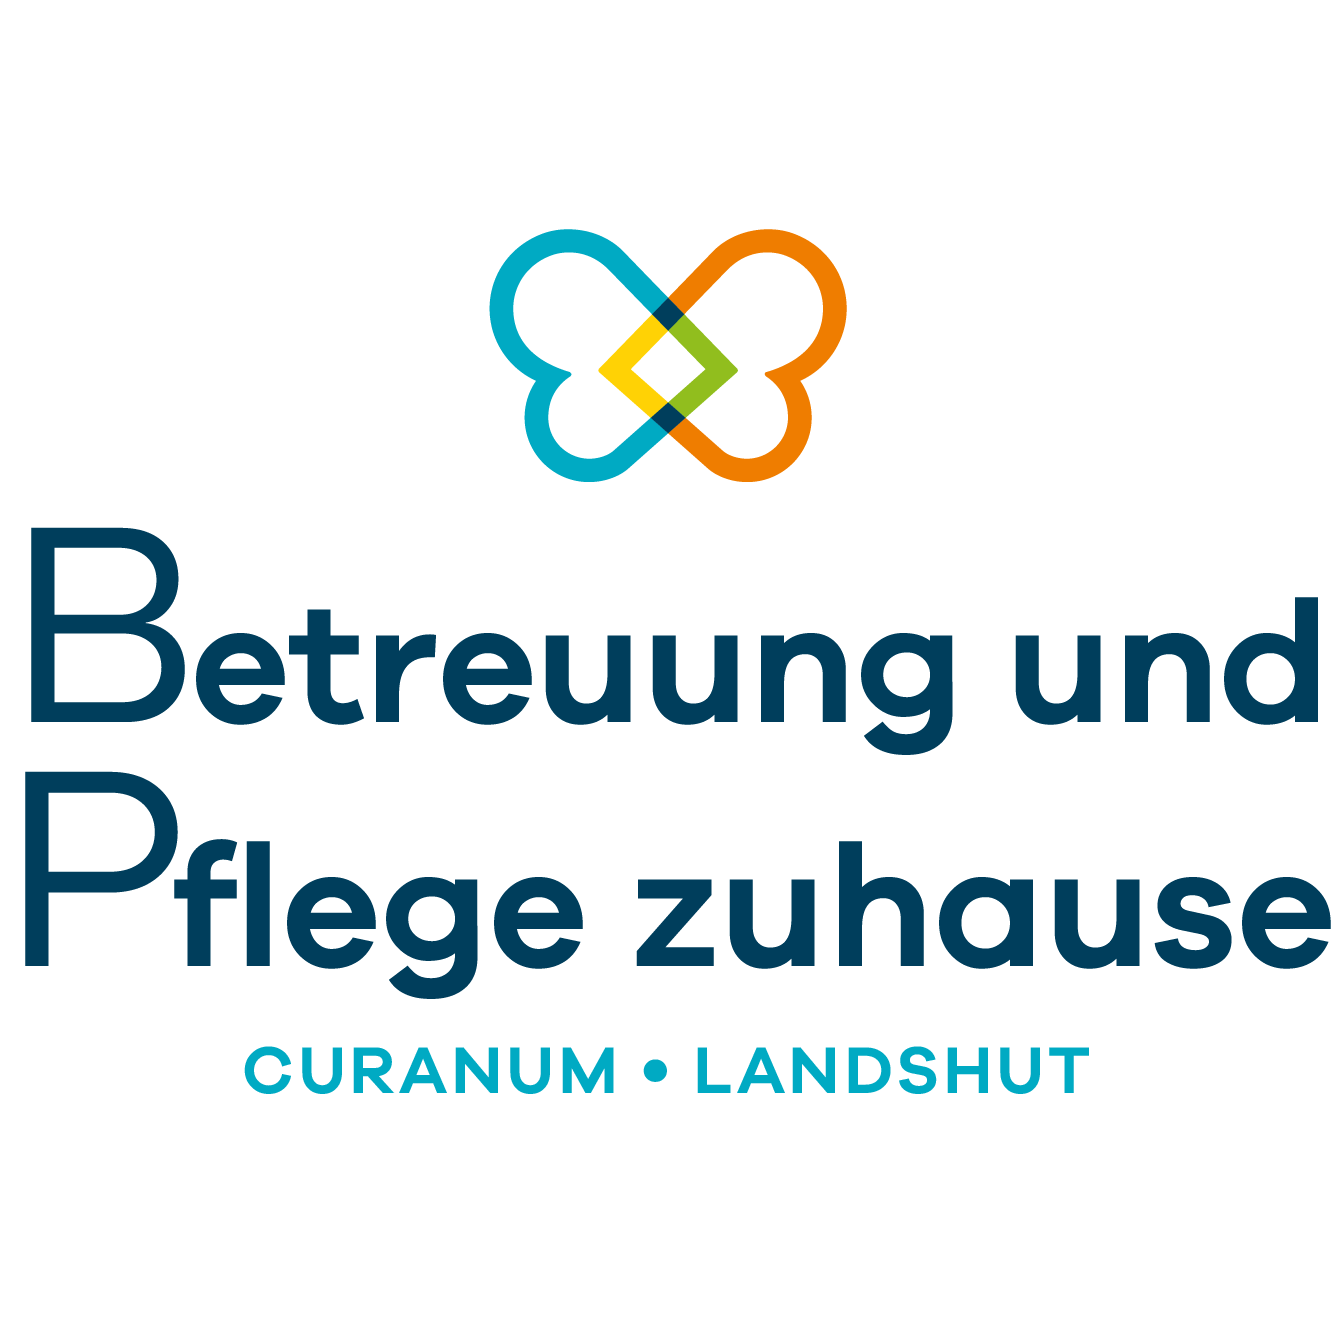 Betreuung und Pflege zuhause Curanum Landshut in Landshut - Logo